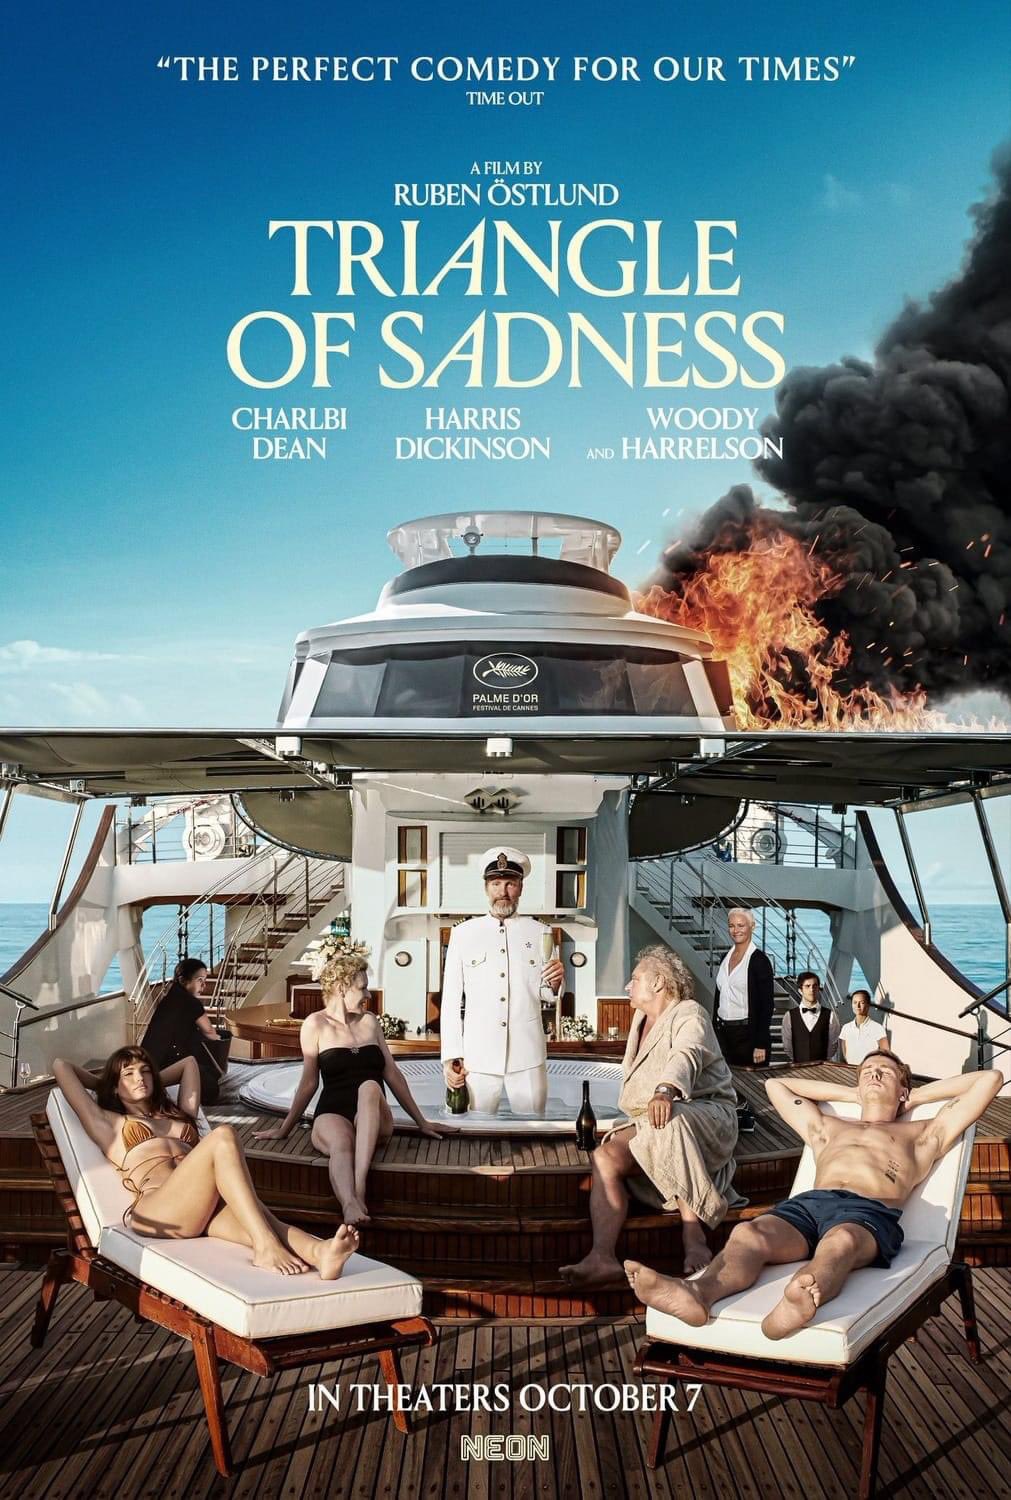 Triangle of Sadness trailer & poster door Ruben Östlund